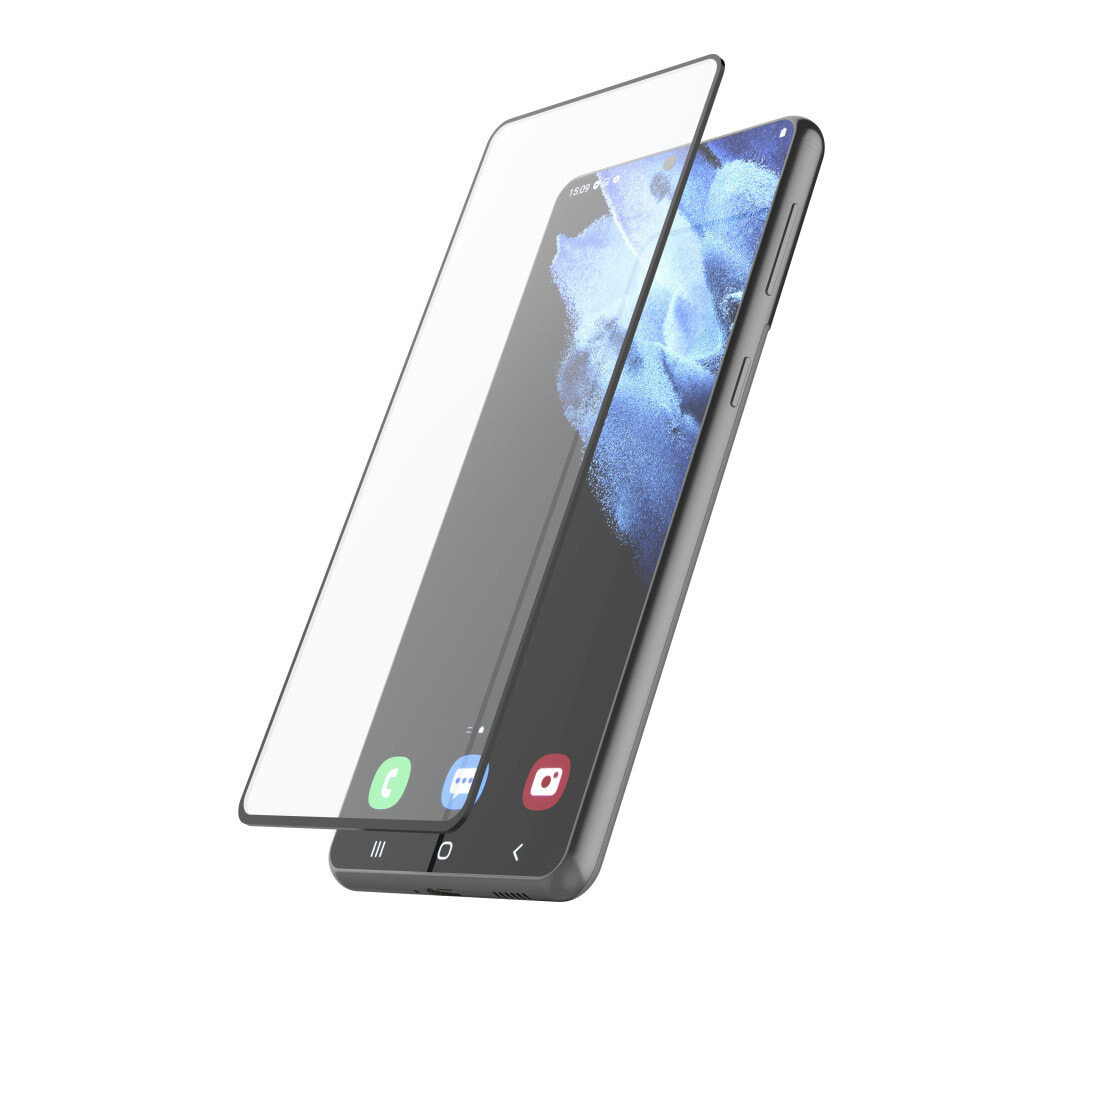 Hama 00213062 защитная пленка / стекло для мобильного телефона Прозрачная защитная пленка Samsung 1 шт